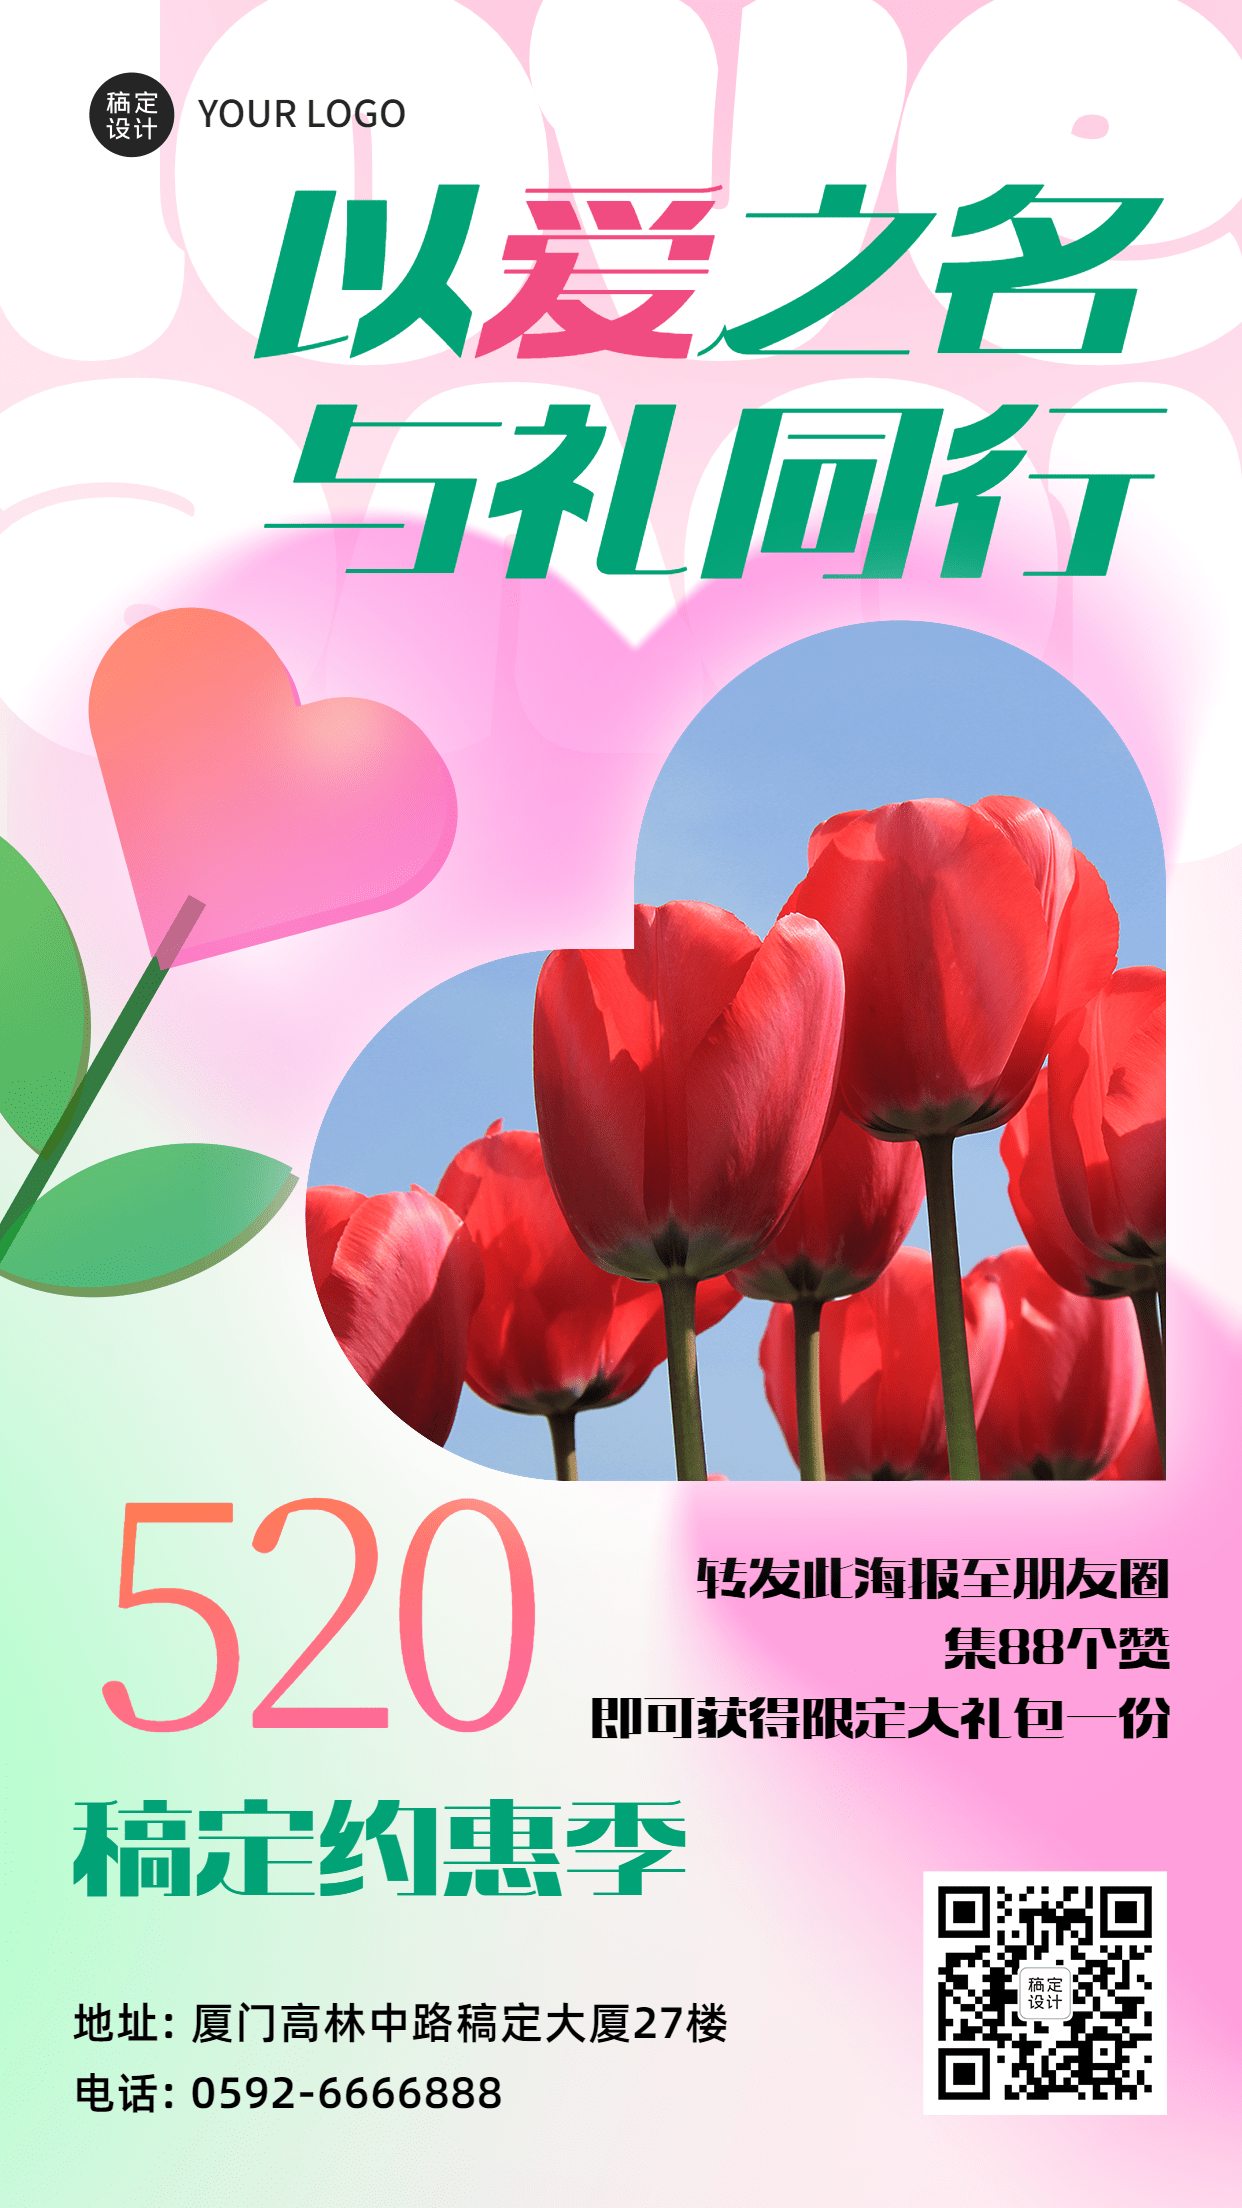 520情人节节日祝福郁金香排版手机海报